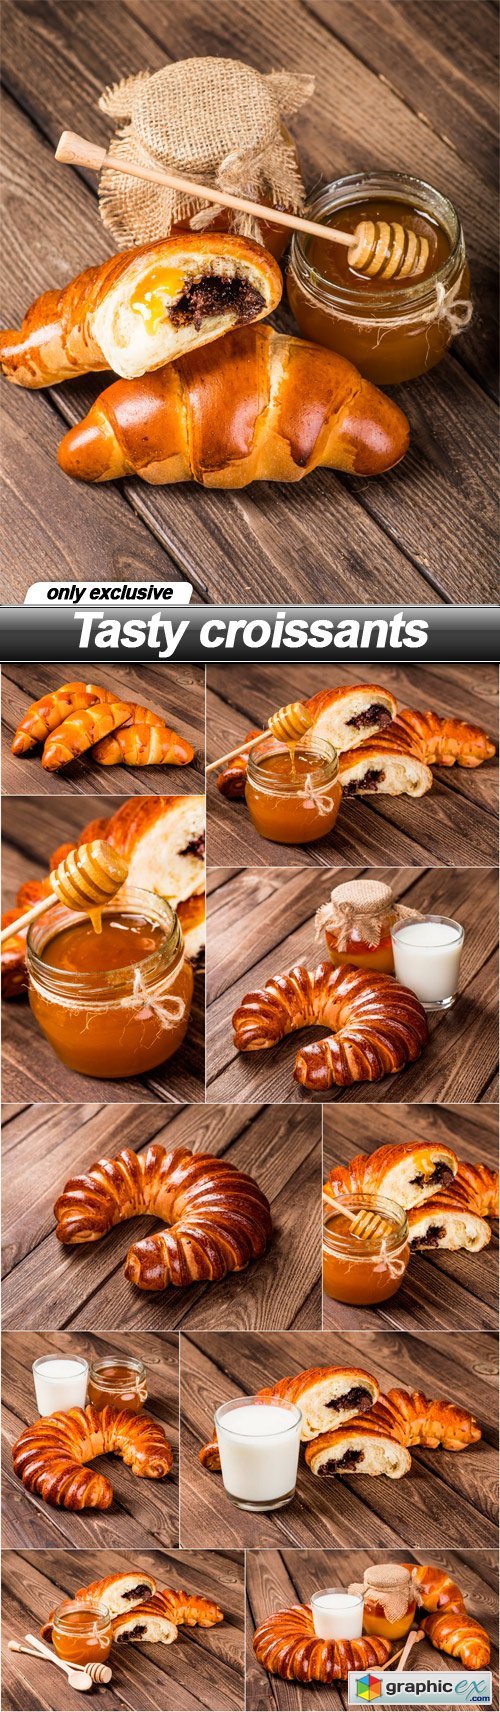 Tasty croissants - 11 UHQ JPEG